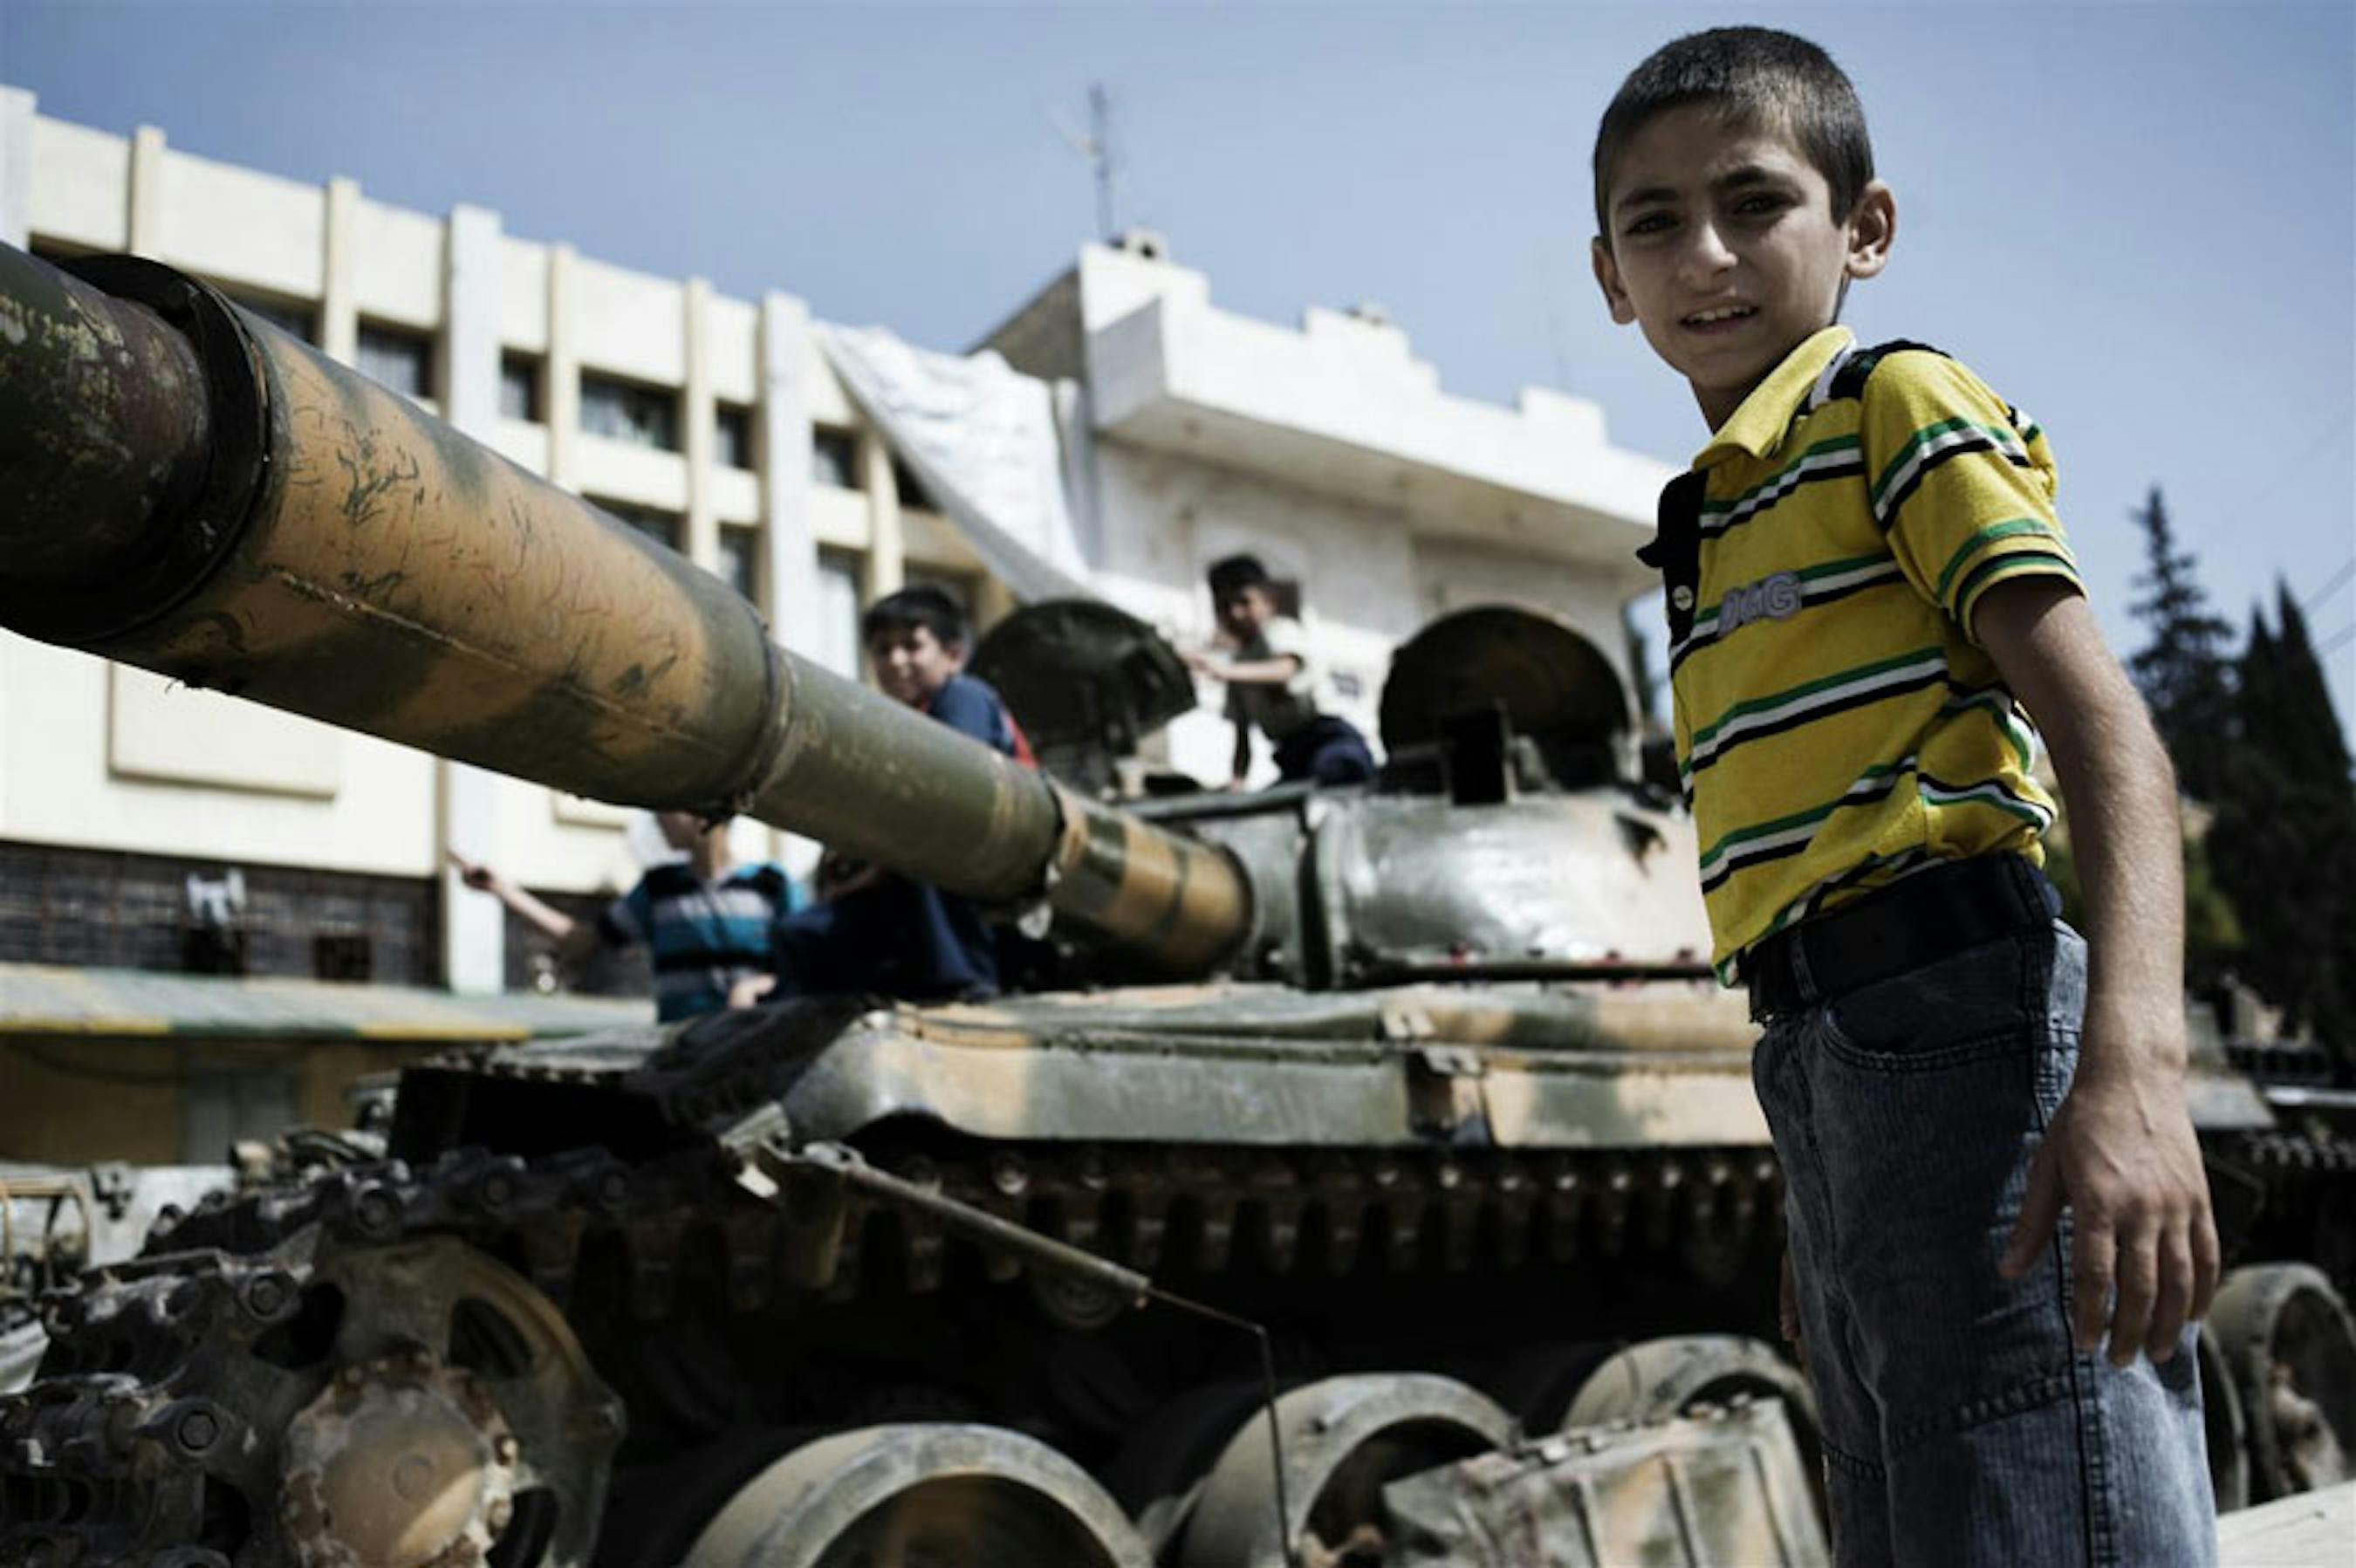 Un bambino accanto a un carro armato in una via di Aleppo, Siria - ©UNICEF/NYHQ2012-1300/Alessio Romenzi